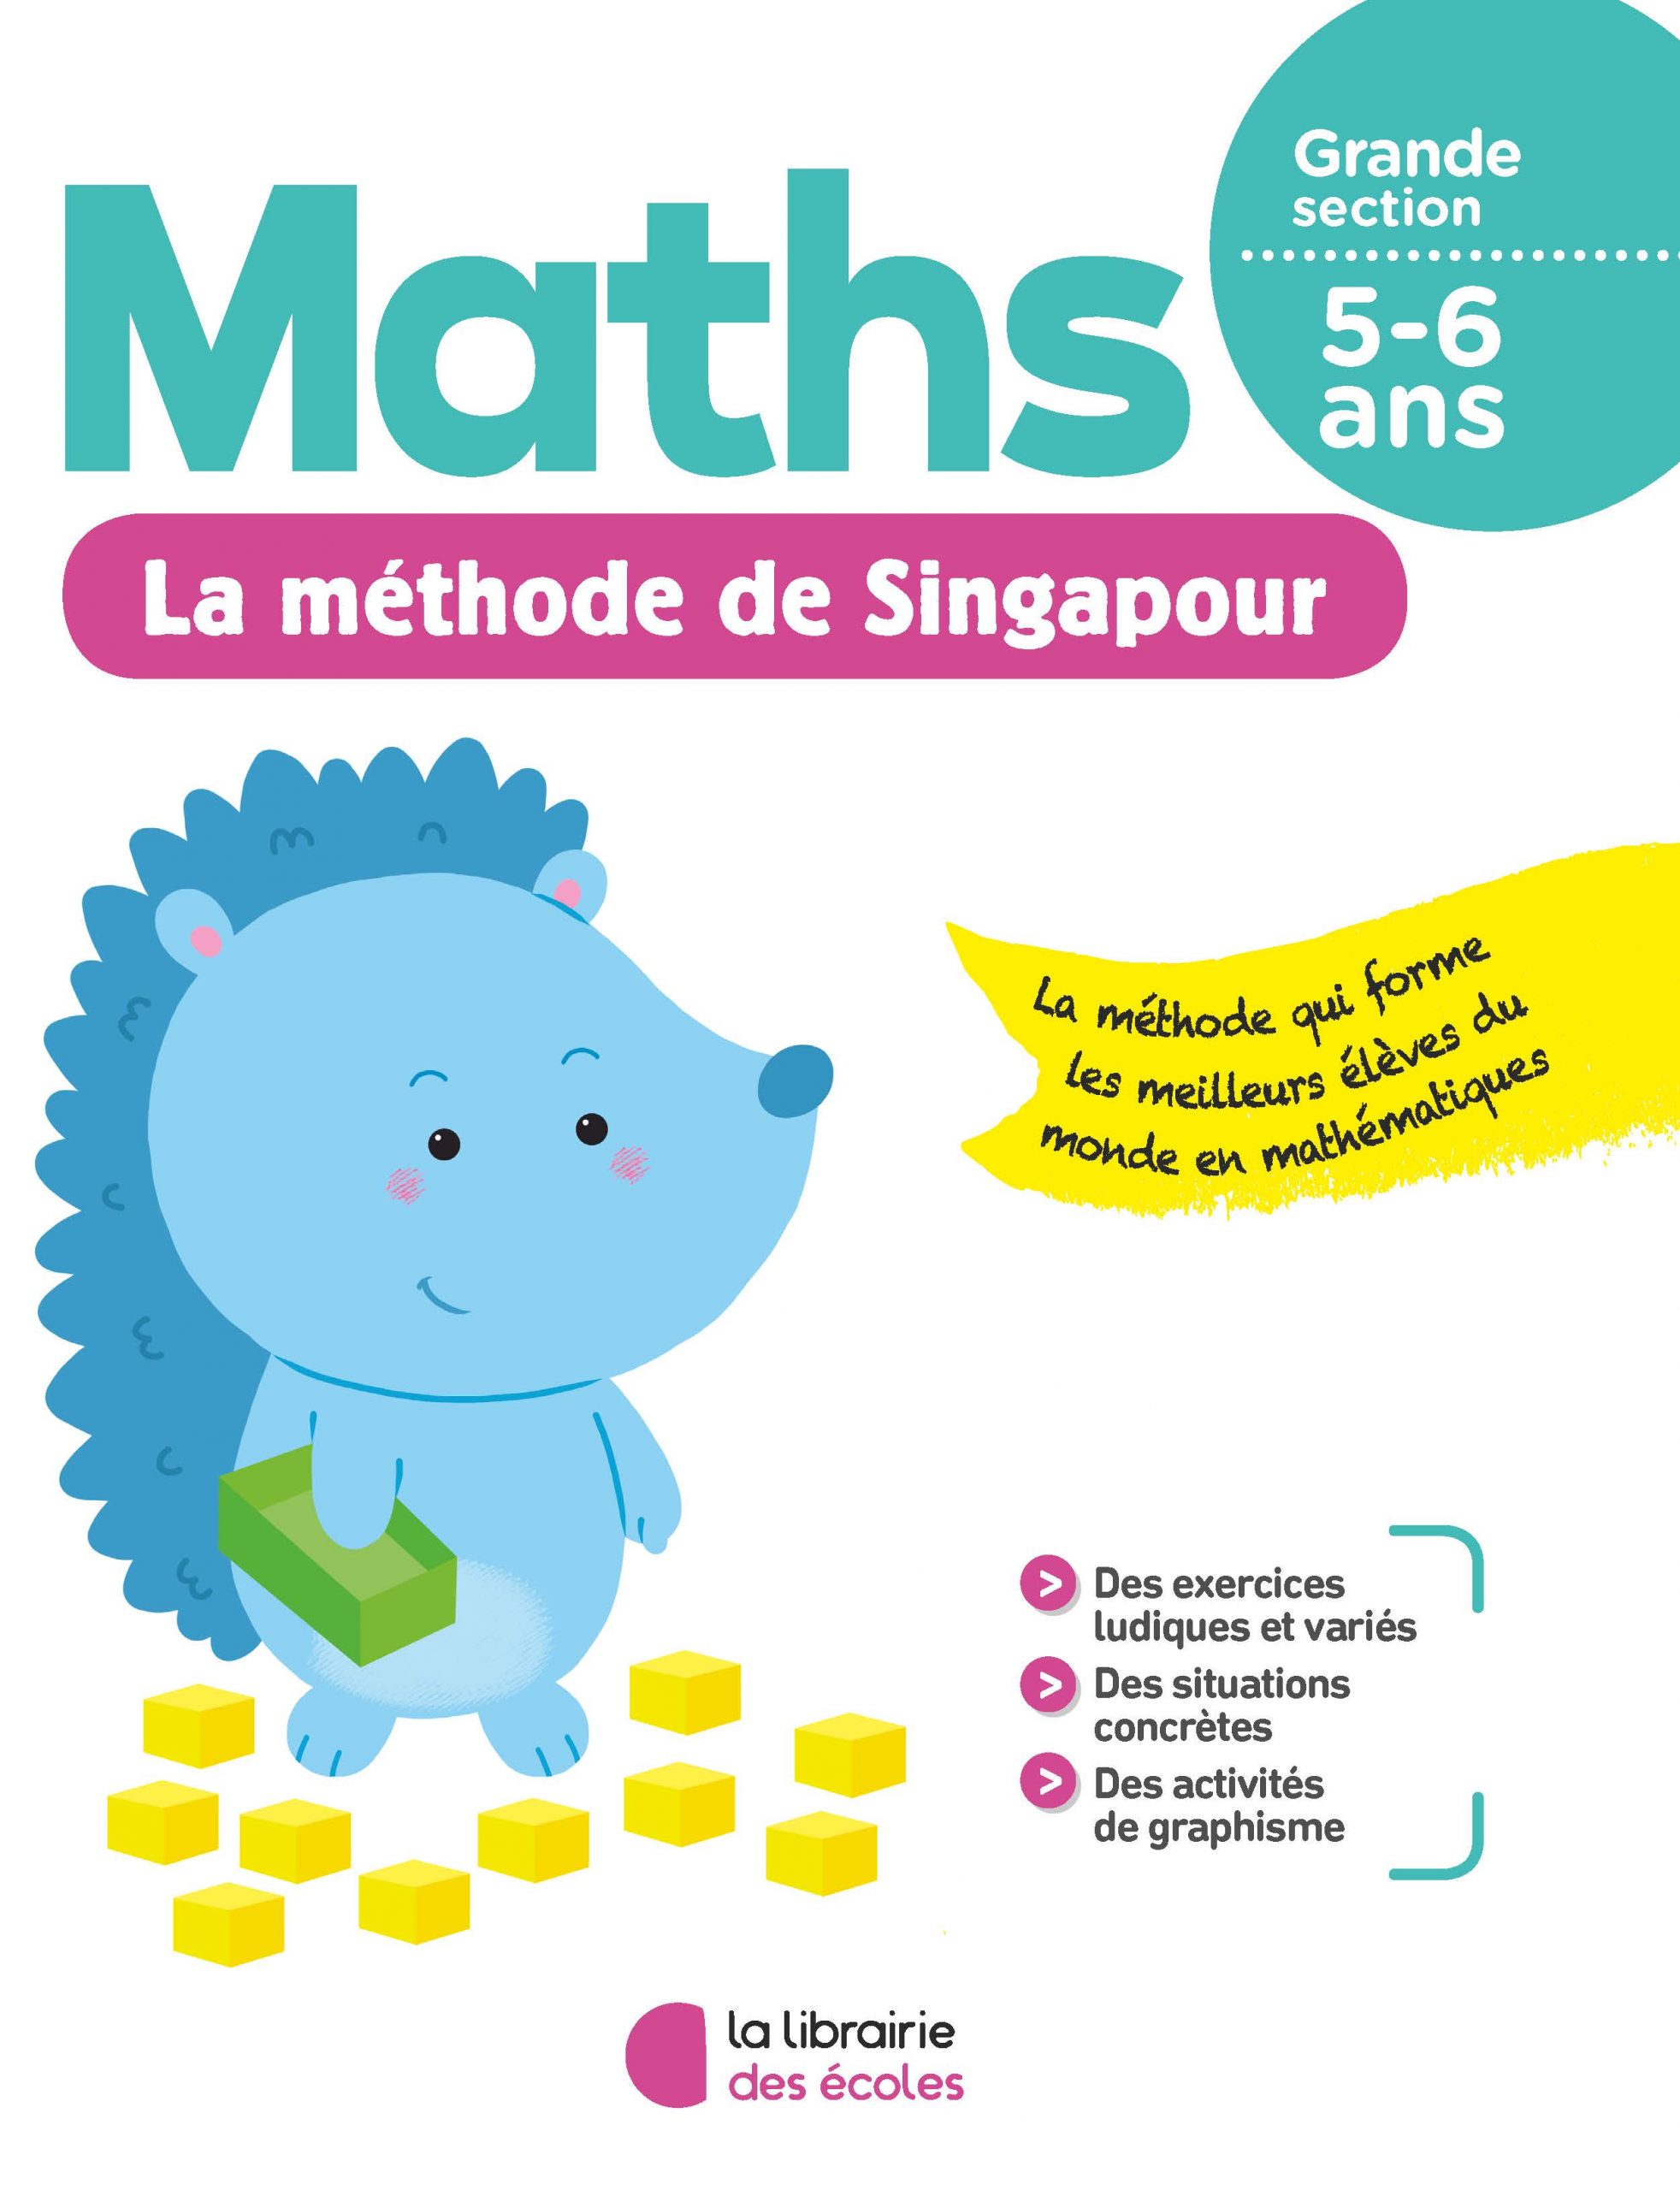 Comment apprendre à raisonner avec les maths de Singapour